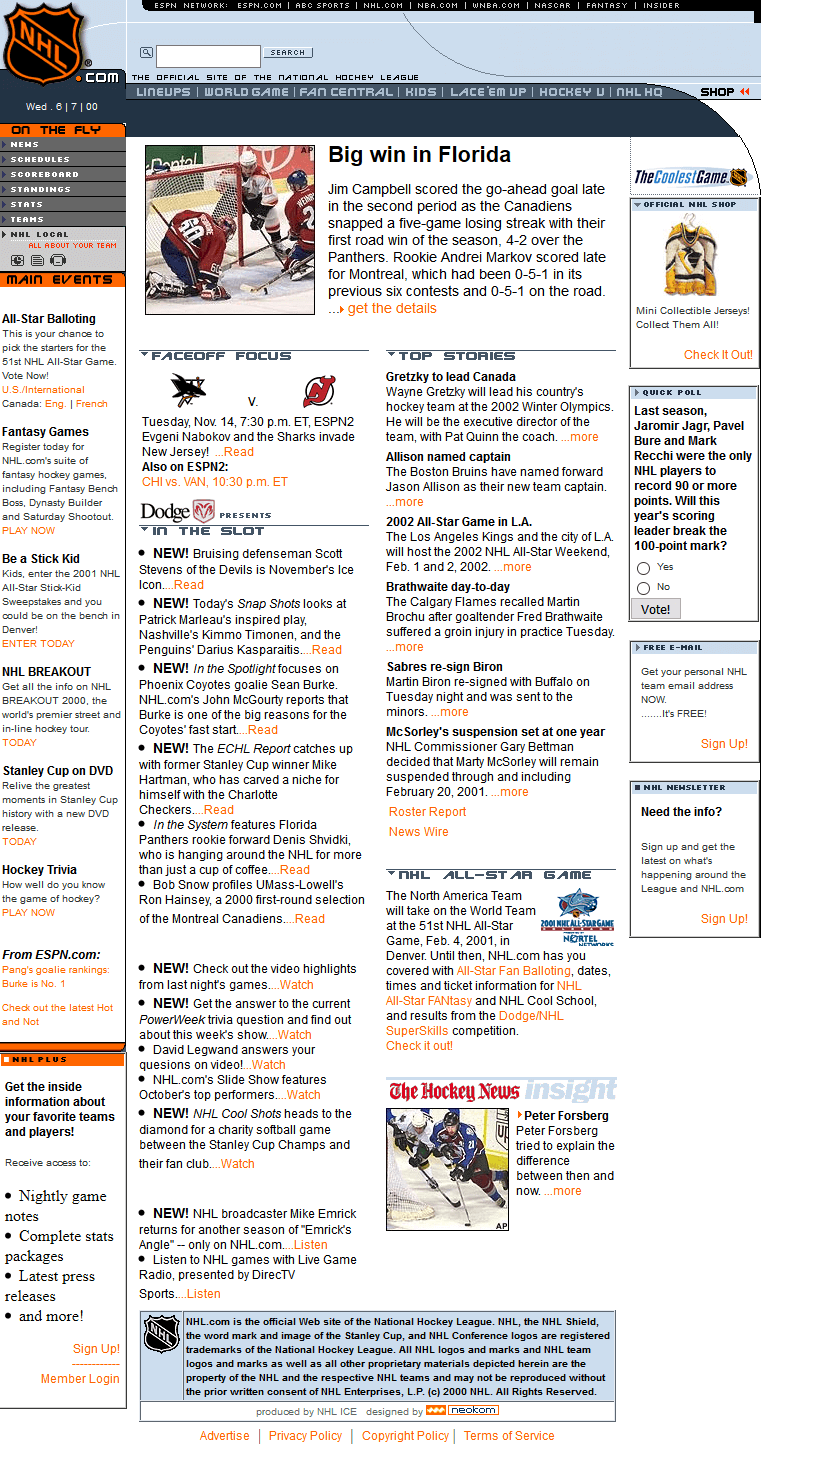 NHL.com in 2000